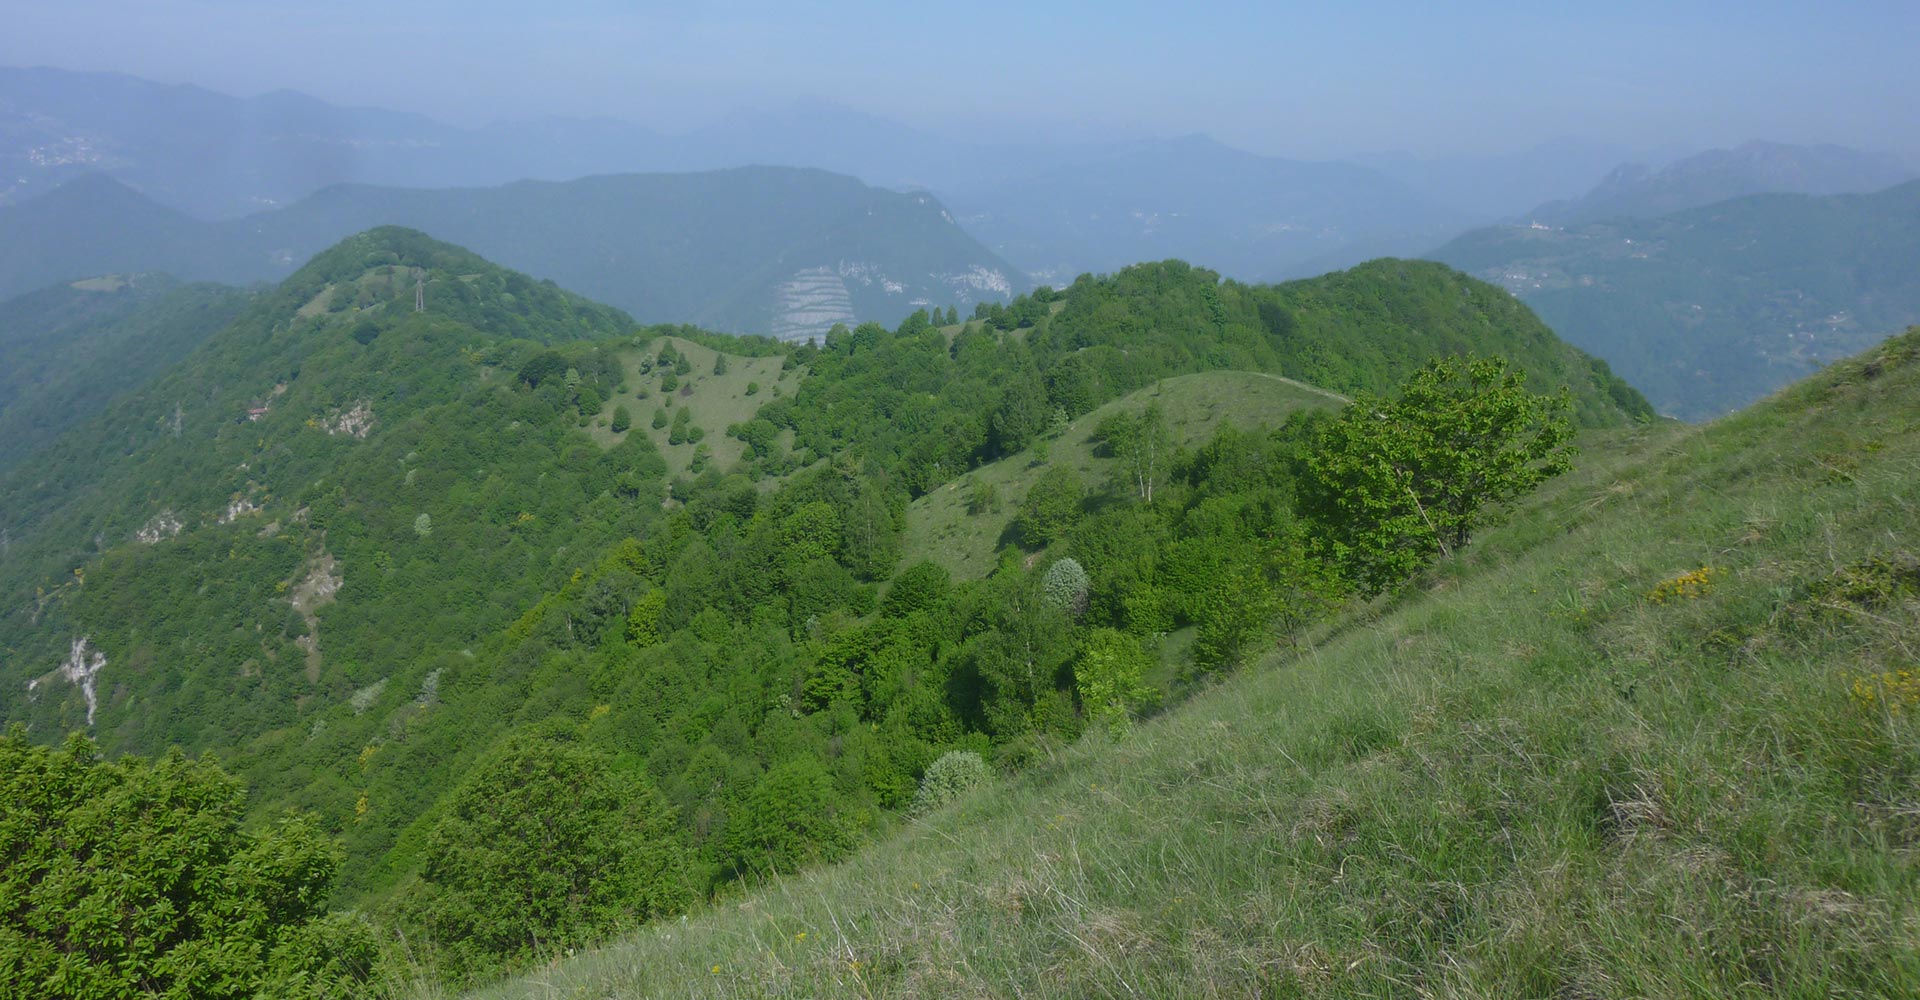 Gal dei Colli Di Bergamo e del Canto Alto